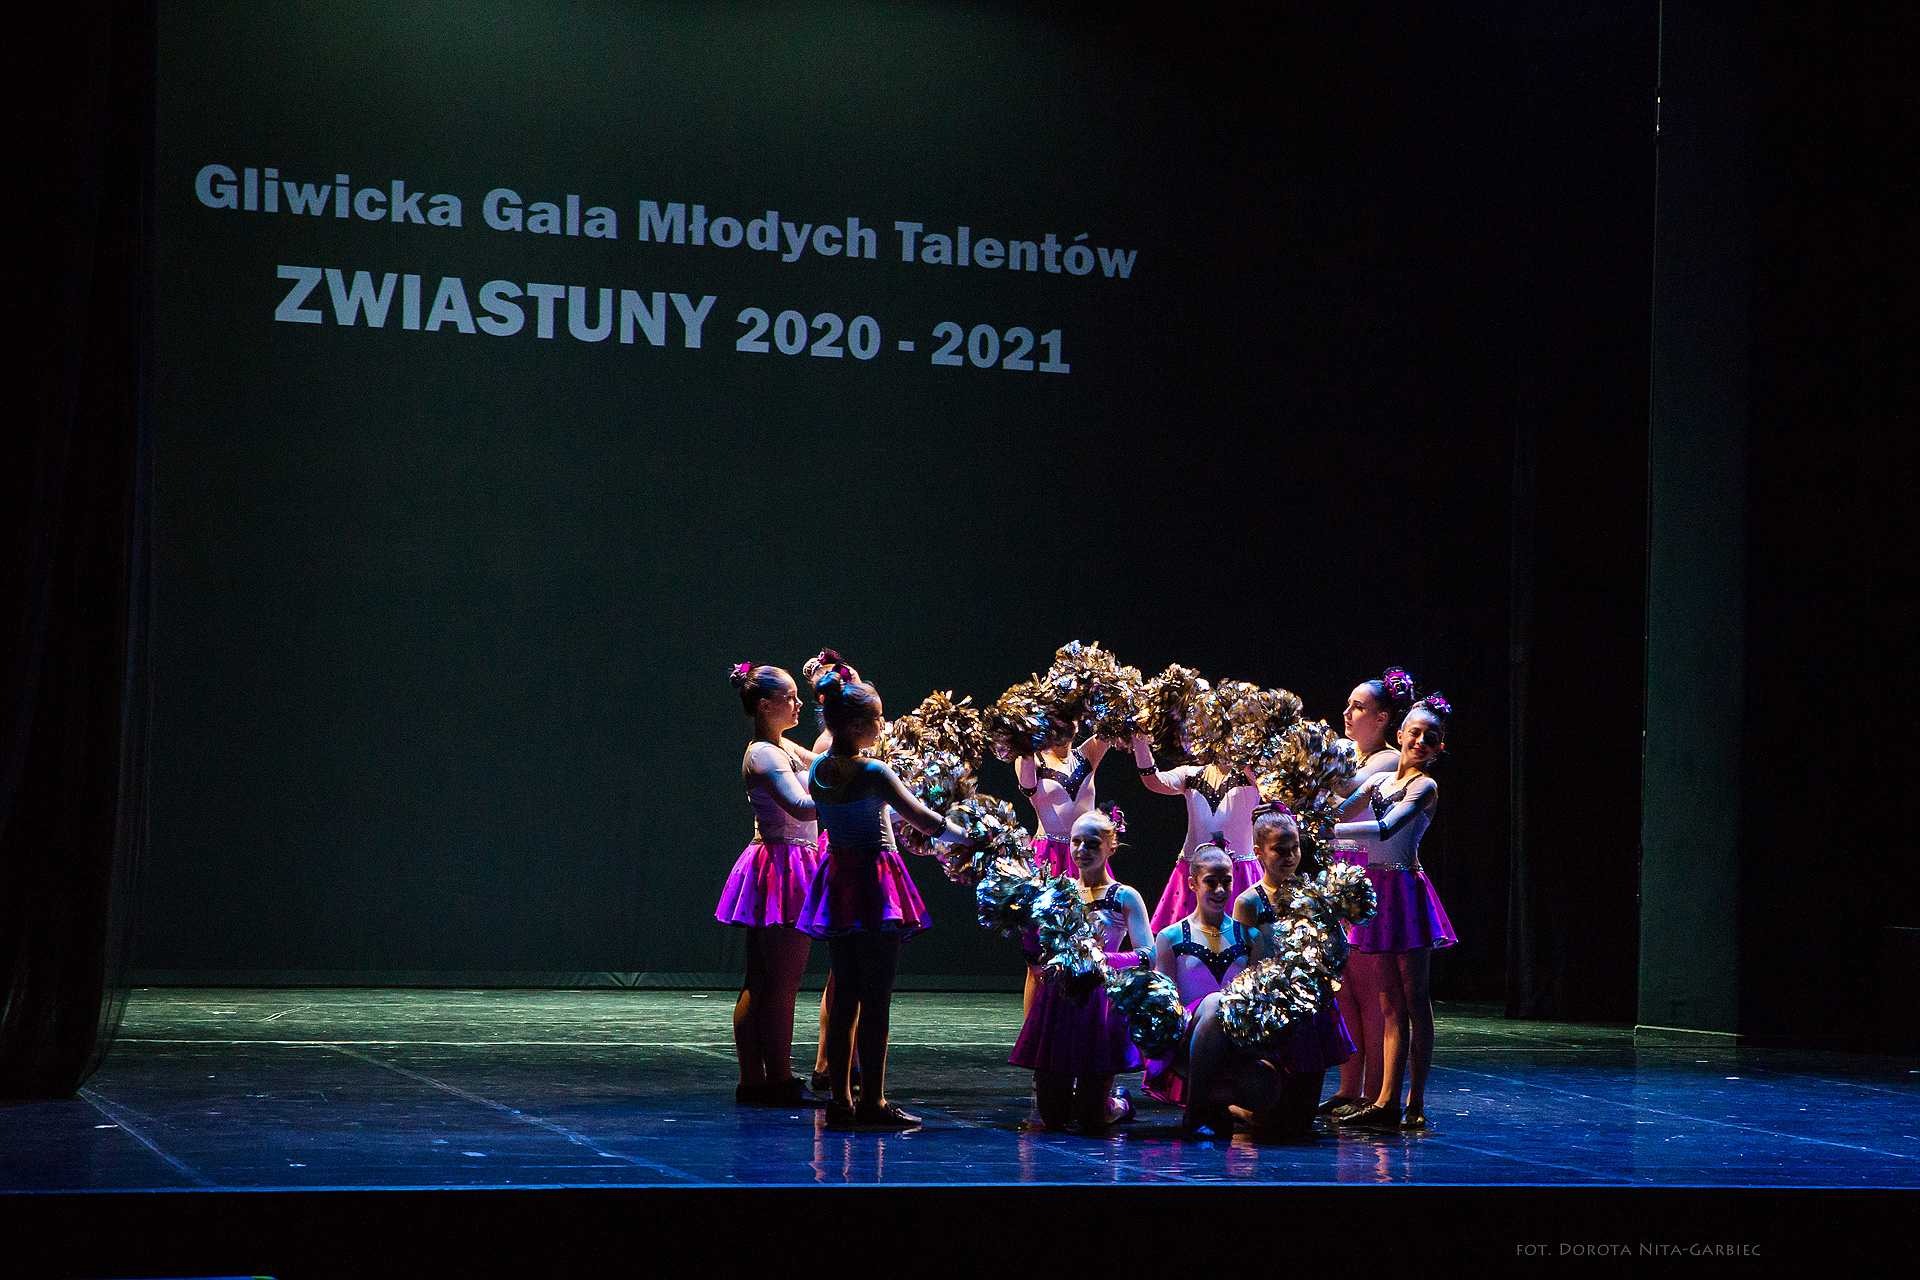 XV Gliwicka Gala Młodych Talentów Zwiastuny 2021 foto: Dorota Nita-Garbiec